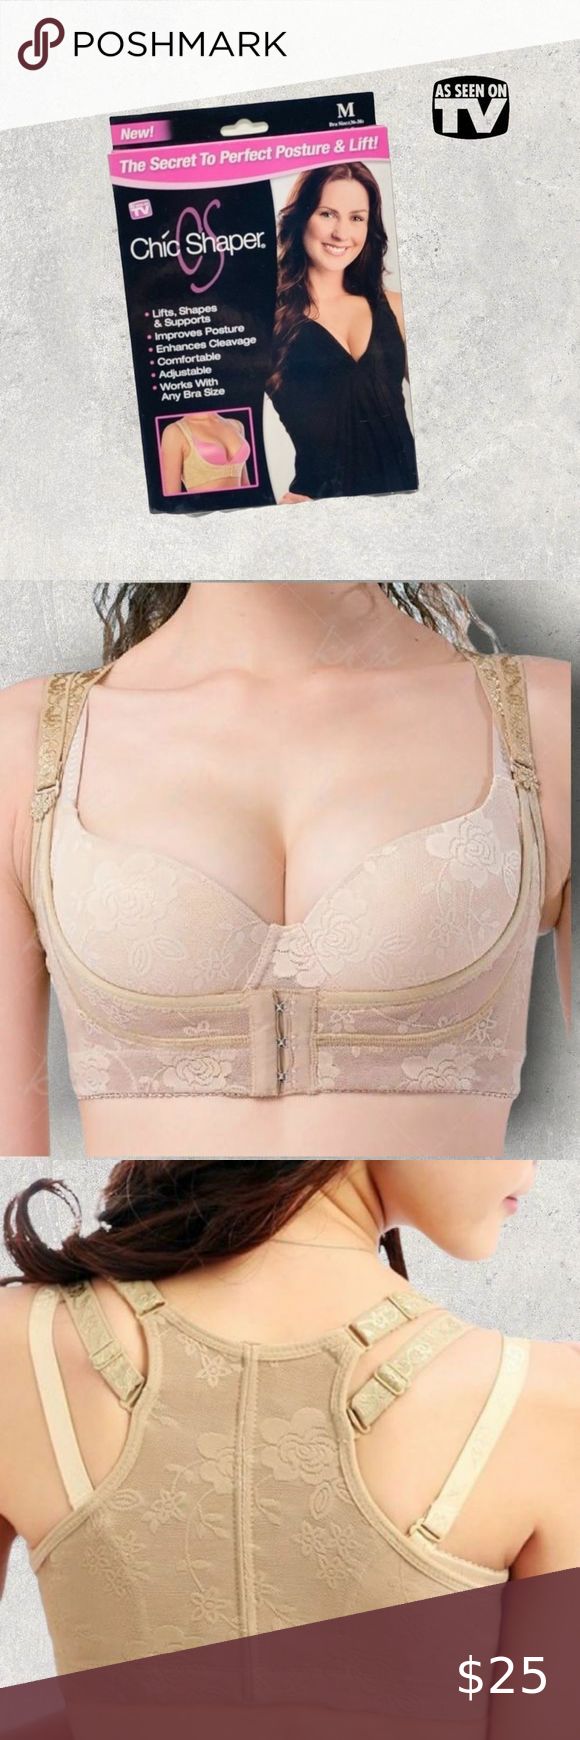 cleavage bra as seen on tv